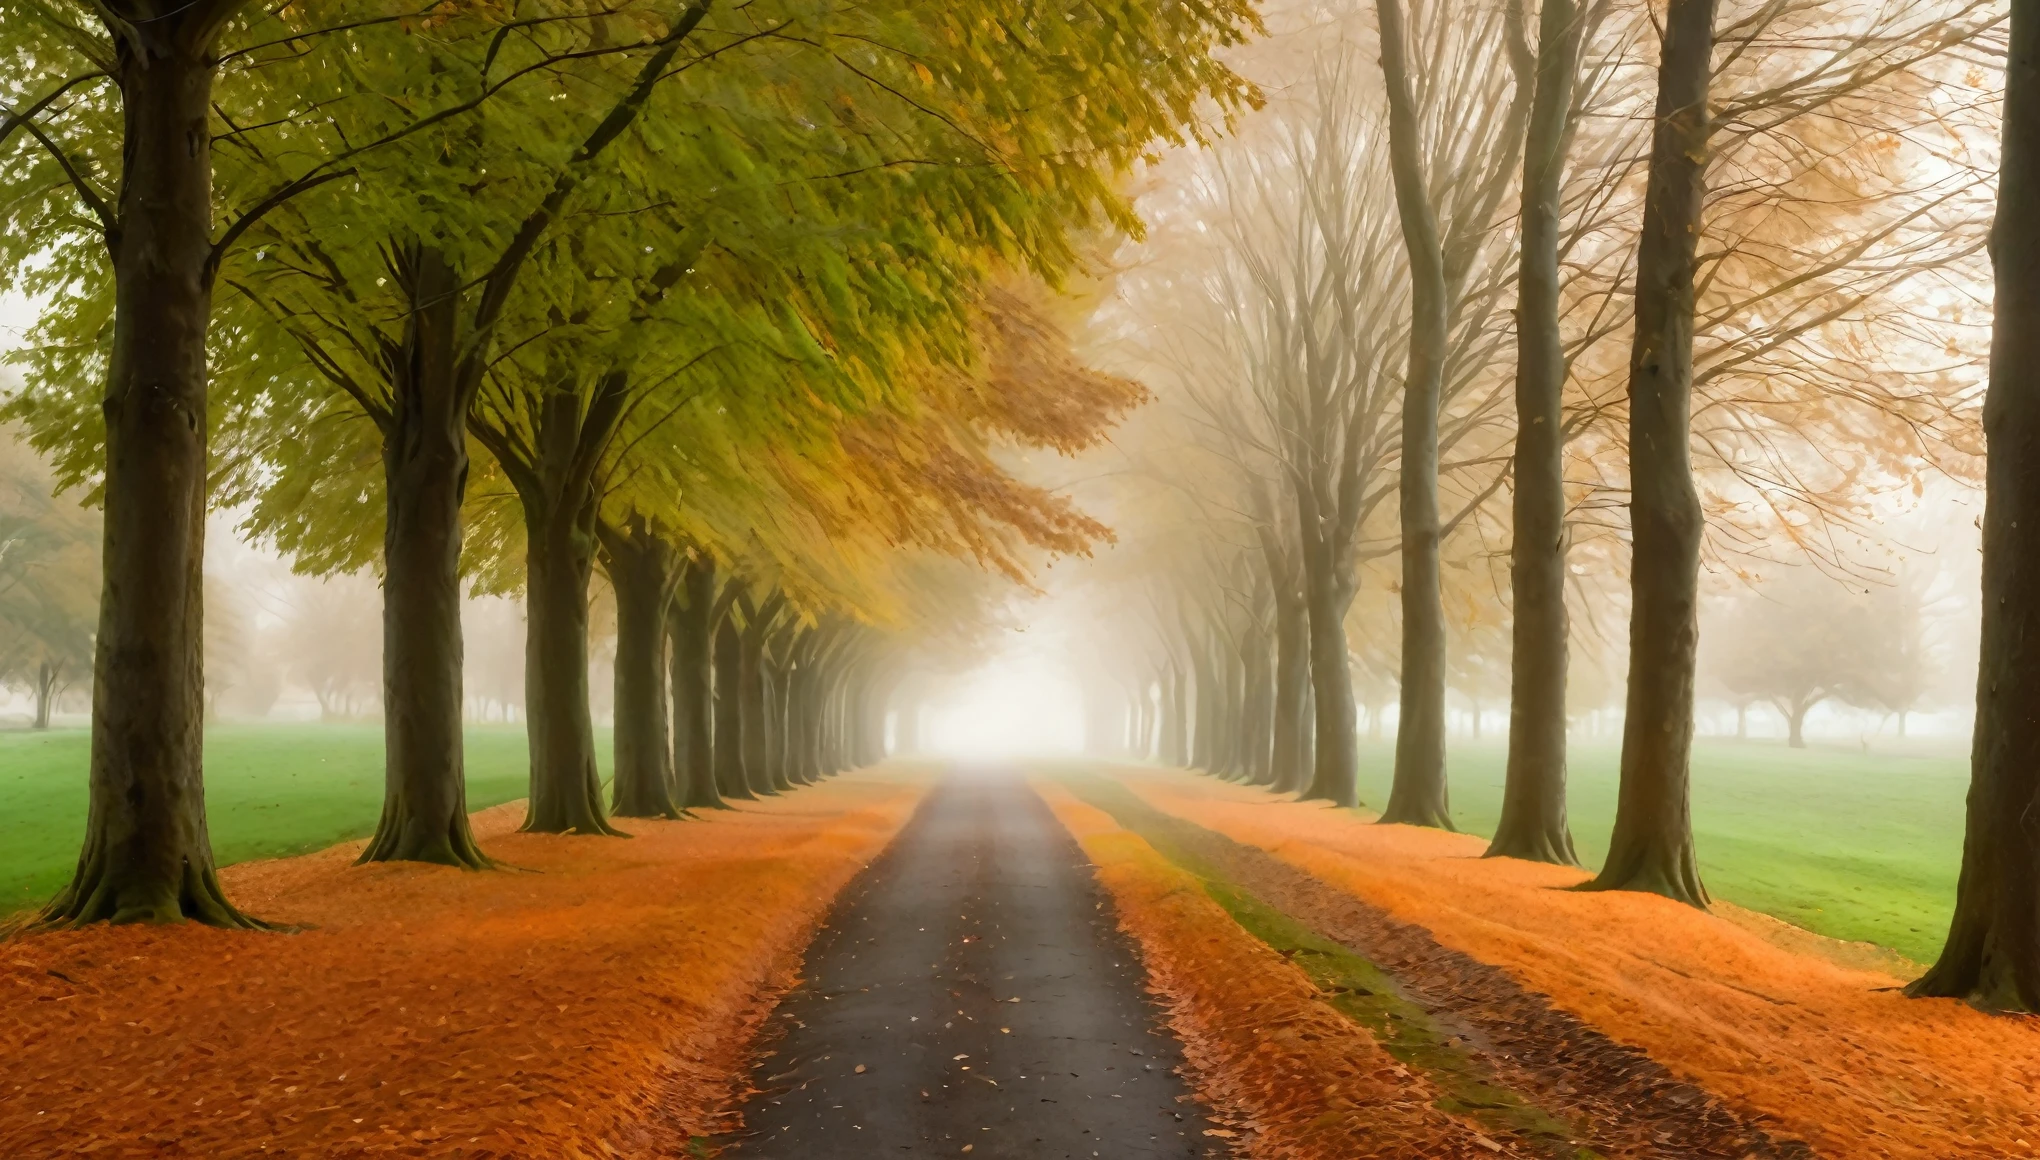 Un endroit serein, allée droite bordée de grands arbres, capturer l&#39;essence de l&#39;automne. Les arbres de chaque côté ont une densité, feuillage orange vif créant un effet de tunnel. Les troncs d&#39;arbres sont sombres et robustes, montrant une texture naturelle. Le sol est recouvert d&#39;une légère couche de feuilles mortes assorties à la couleur du feuillage., ajoutant à l&#39;ambiance d&#39;automne. Le chemin lui-même est large, avec une texture légèrement rugueuse, composé de petits graviers et de terre. sur le côté droit de l’image, l&#39;herbe verte borde le chemin, contrastant avec les tons orangés des arbres. L&#39;arrière-plan s&#39;estompe progressivement dans une douce brume, créer un rêve, ambiance éthérée. Le ciel est couvert, avec une lumière diffuse qui rehausse les couleurs des feuilles. La composition globale est symétrique, avec le sentier et la limite des arbres convergeant vers un point de fuite au loin.